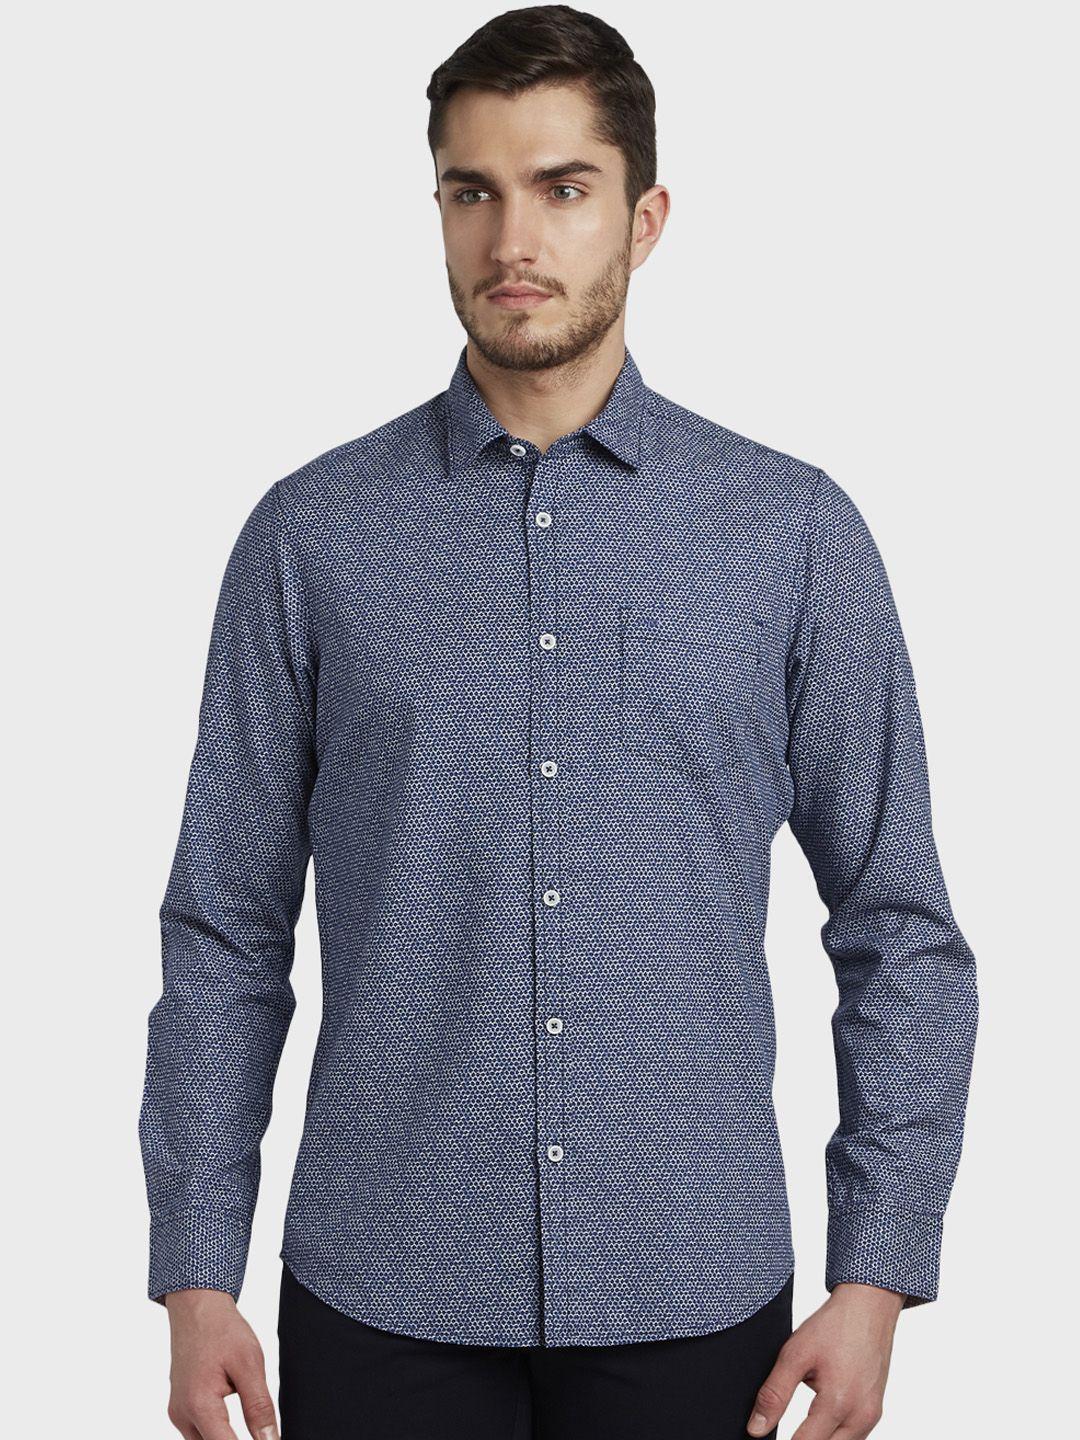 colorplus-men-blue-regular-fit-printed-casual-shirt